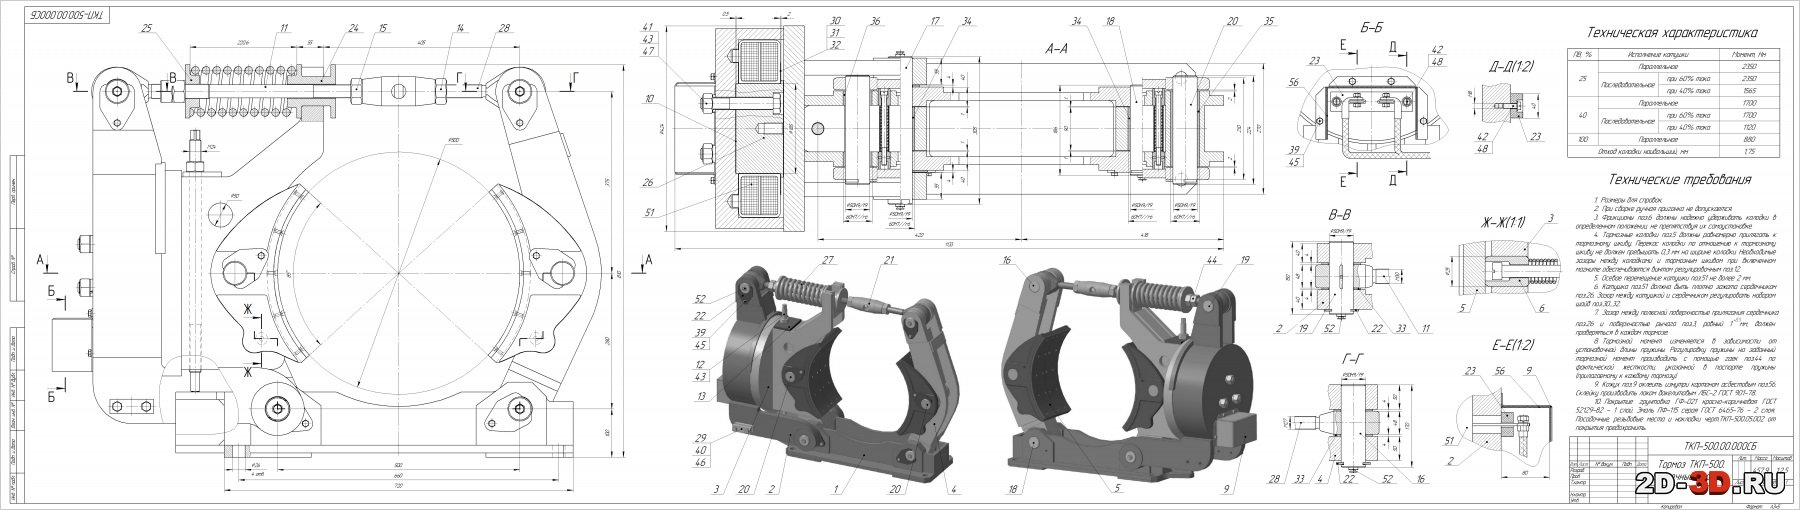 Тормоз ТКП-500 чертежи и 3D модель сборки с деталировкой